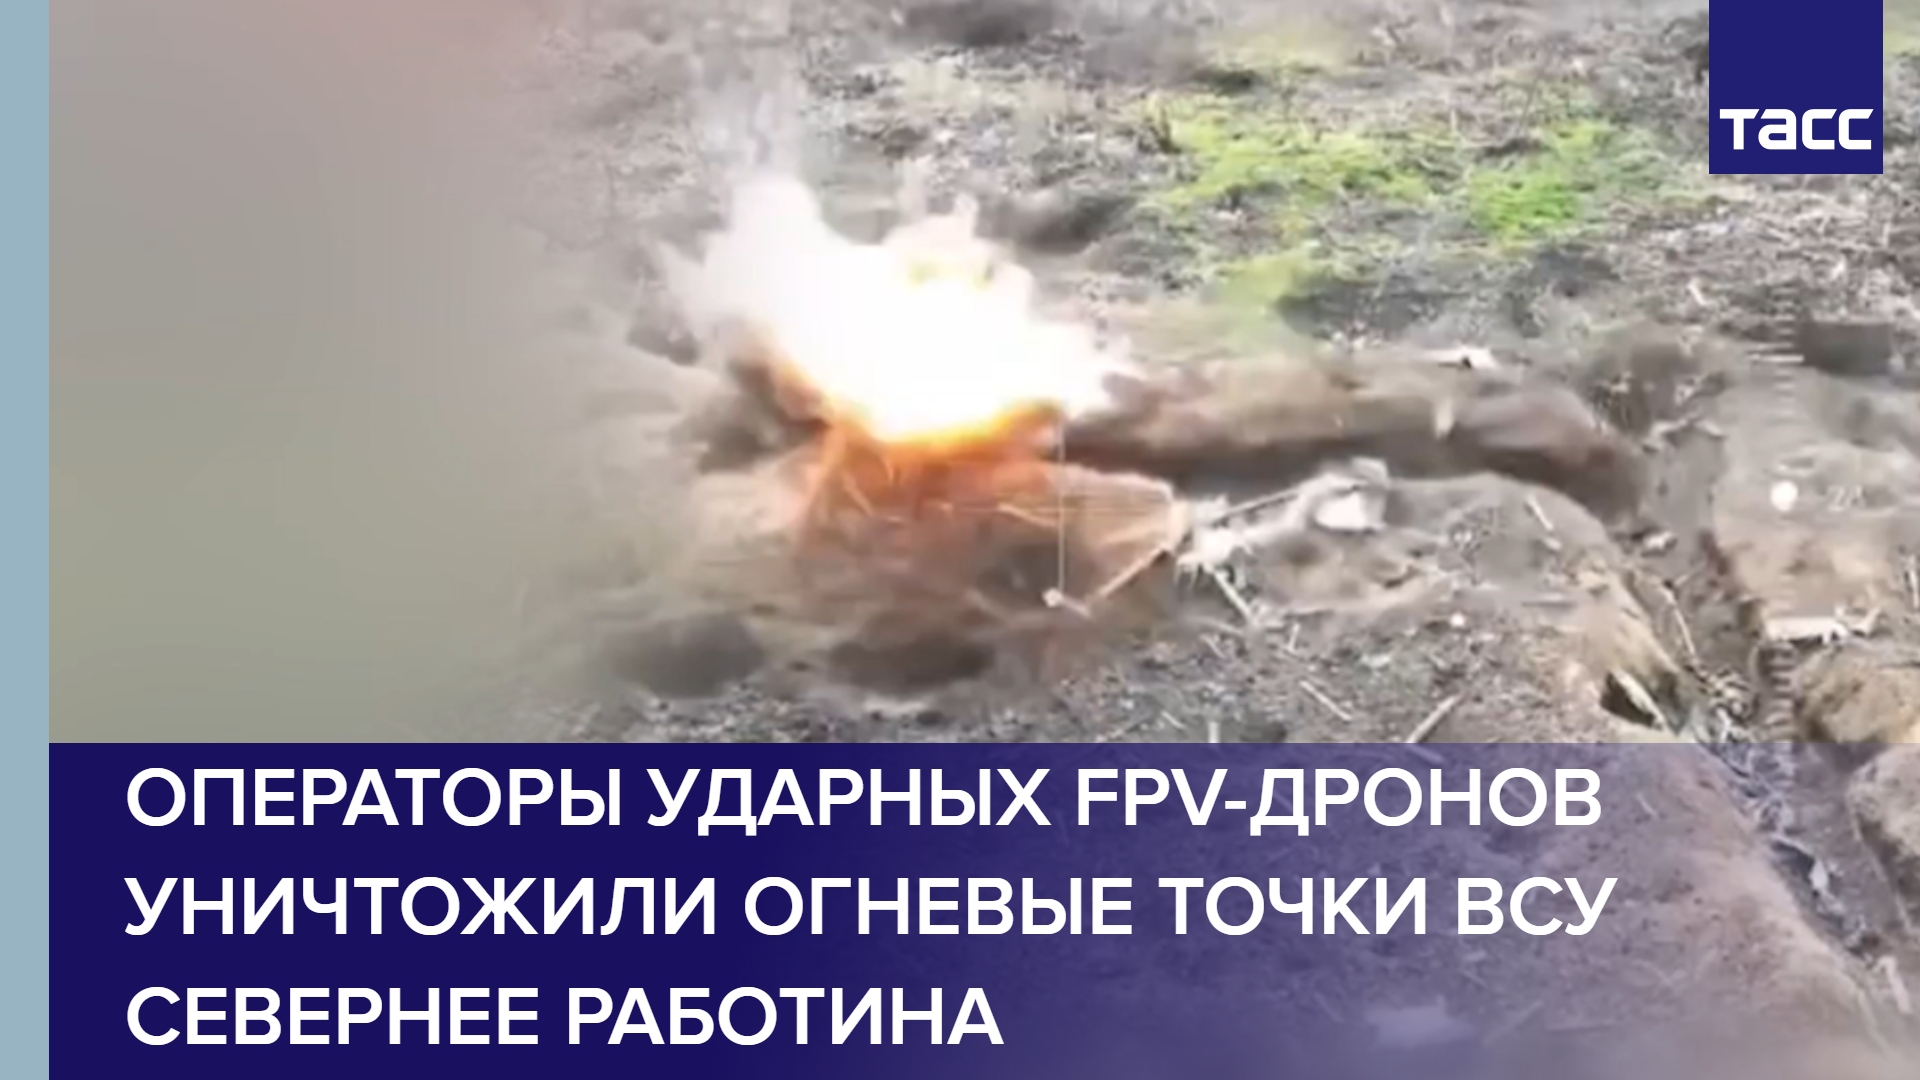 Операторы ударных FPV-дронов уничтожили огневые точки ВСУ севернее Работина